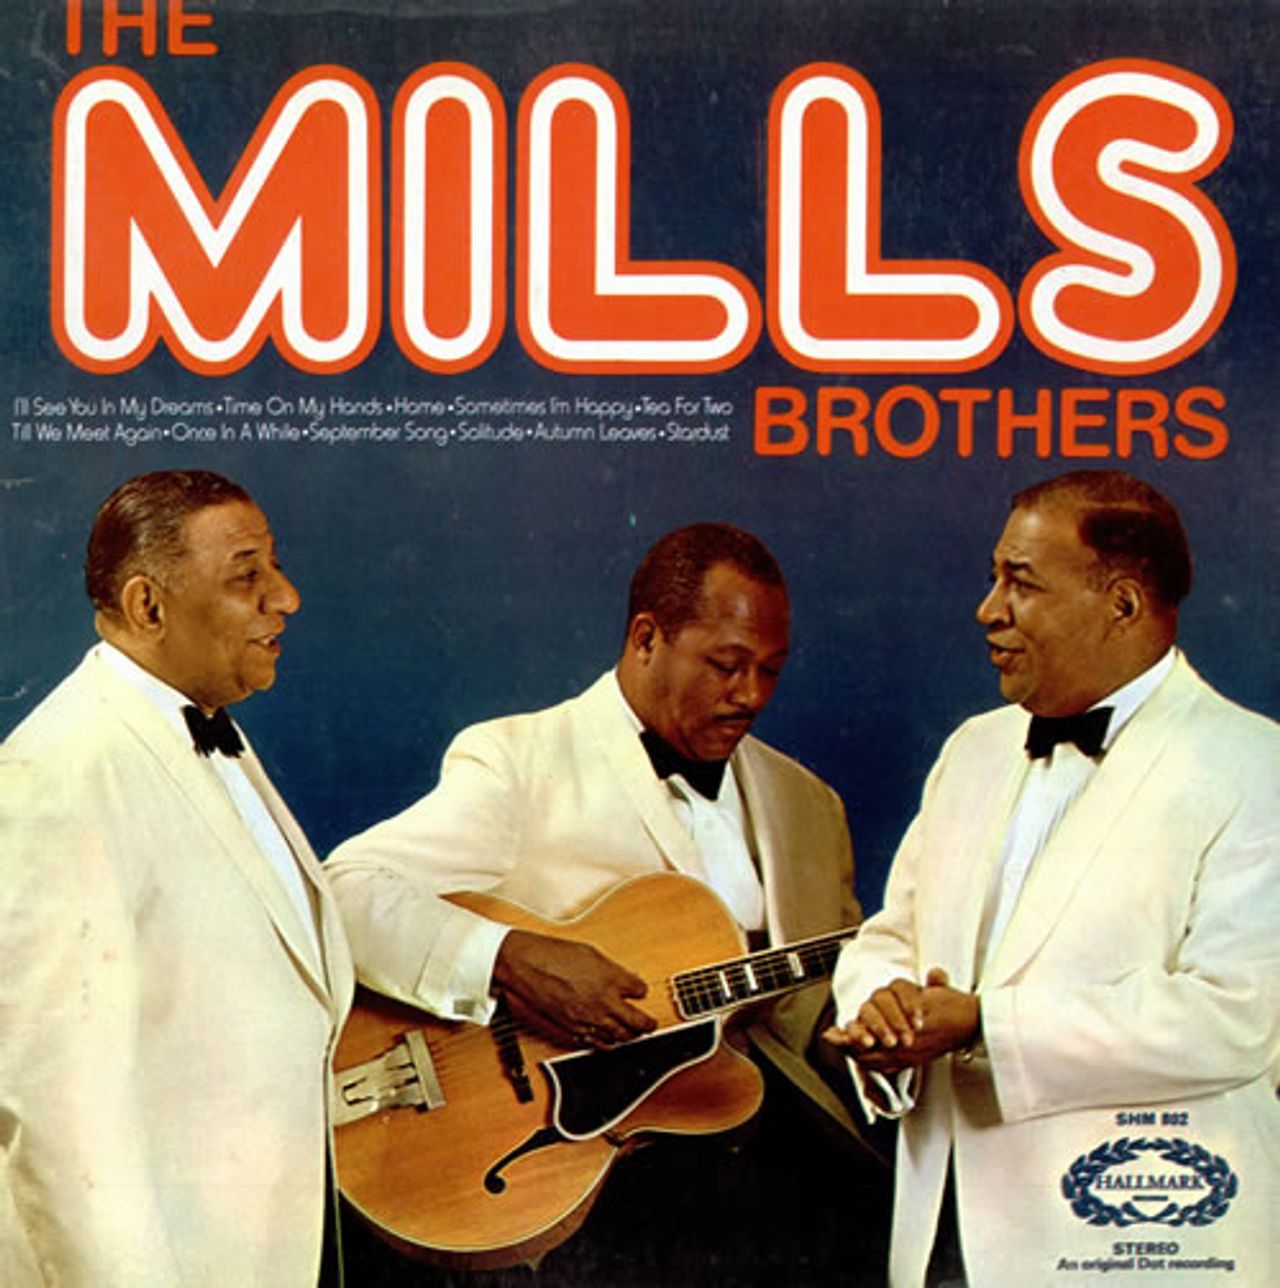 mode jeg behøver Gør det ikke The Mills Brothers The Mills Brothers UK Vinyl LP — RareVinyl.com